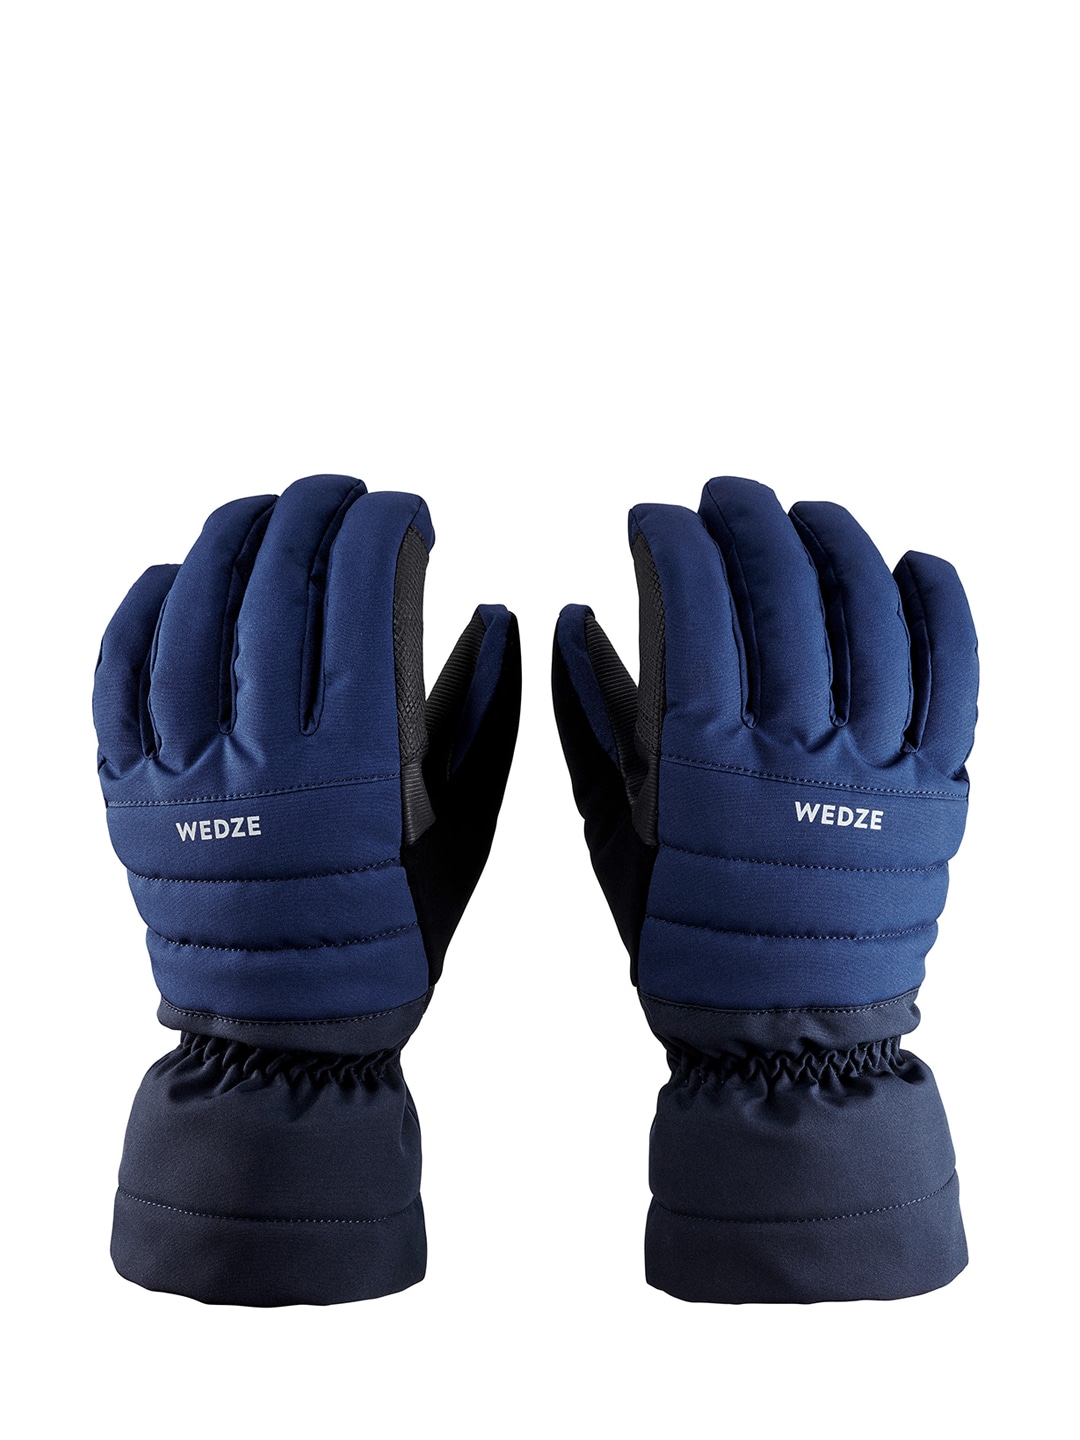 Accessories Gloves | WEDZE By Decathlon Unisex Navy Blue Downhill Ski Gloves 500 - EP75010